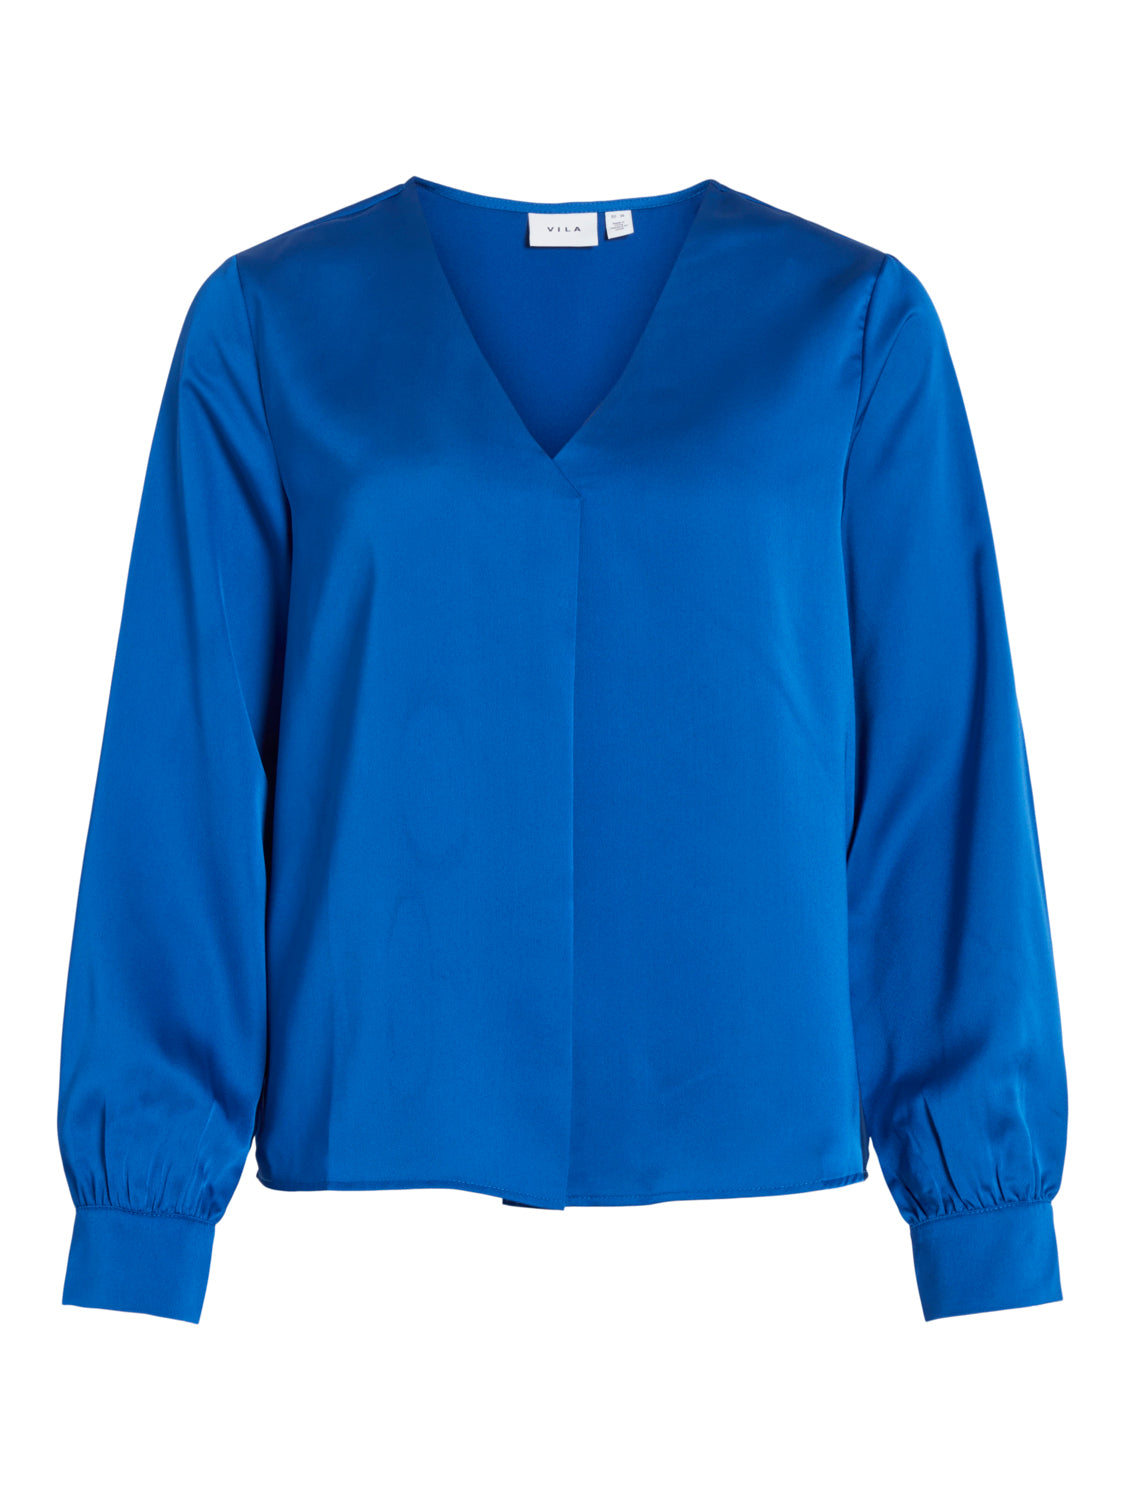 VIELLETTE T-Shirts & Tops - Lapis Blue